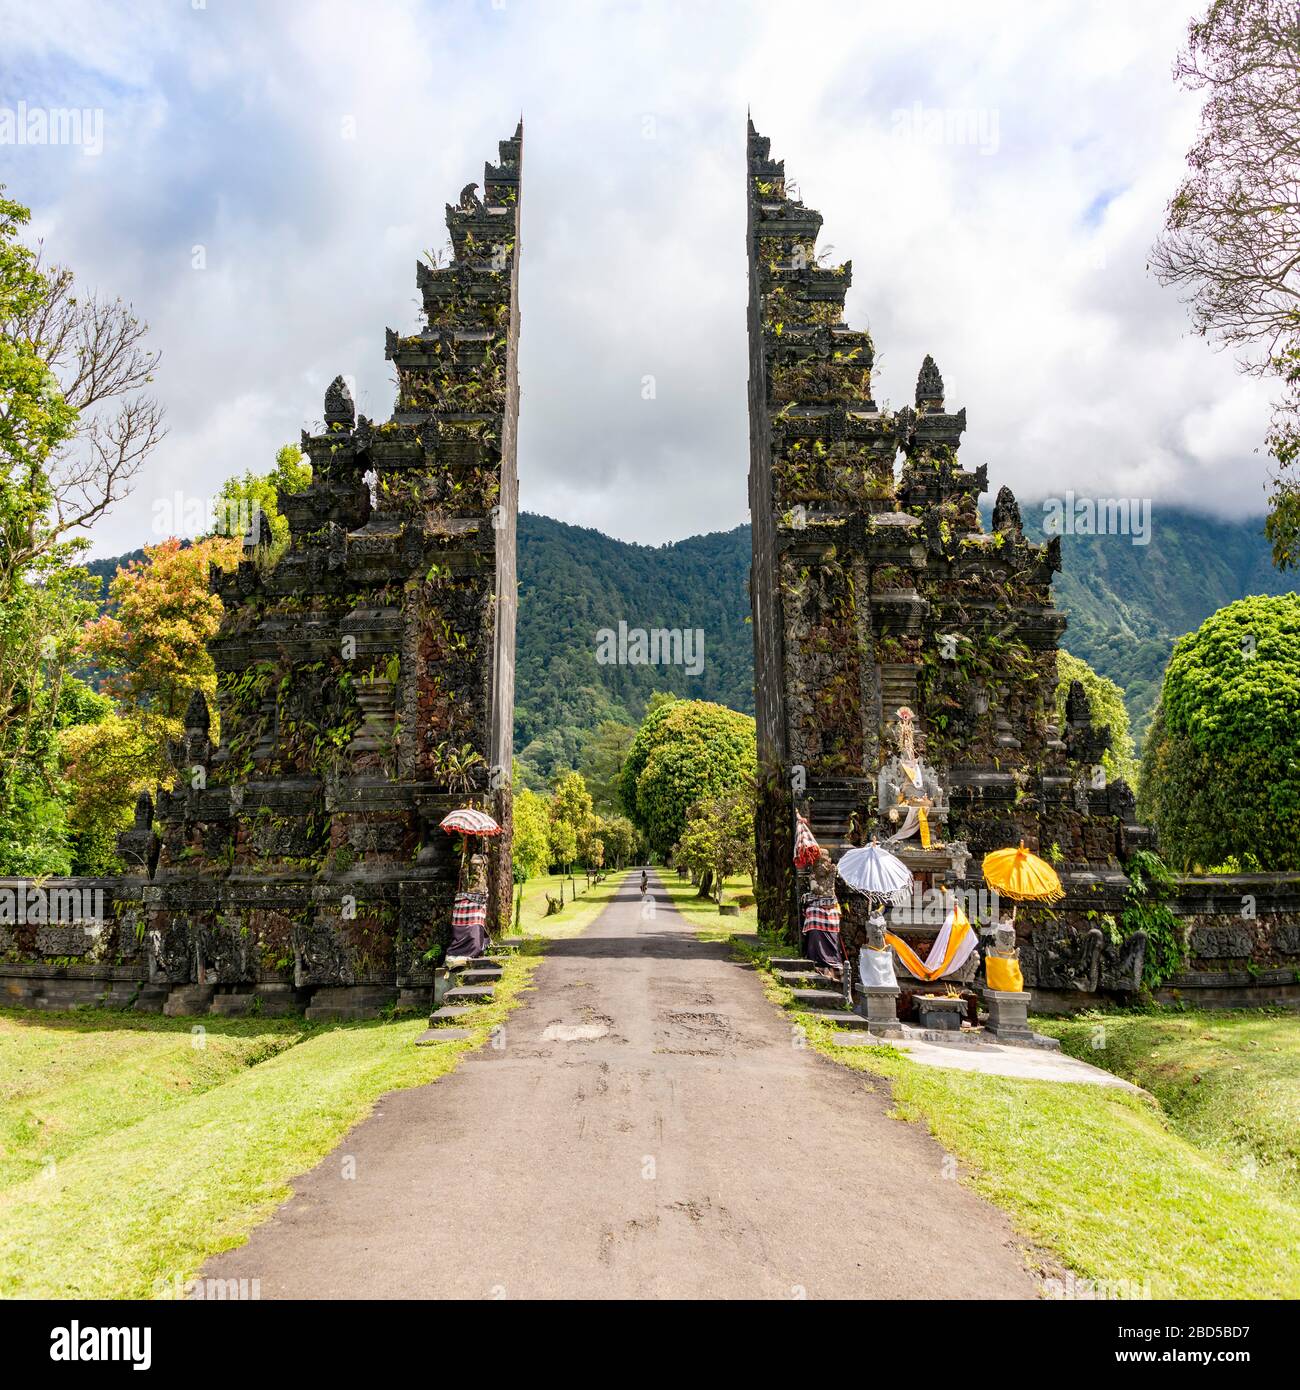 Quadratischer Blick auf das berühmte Handara-Tor in Bali, Indonesien. Stockfoto